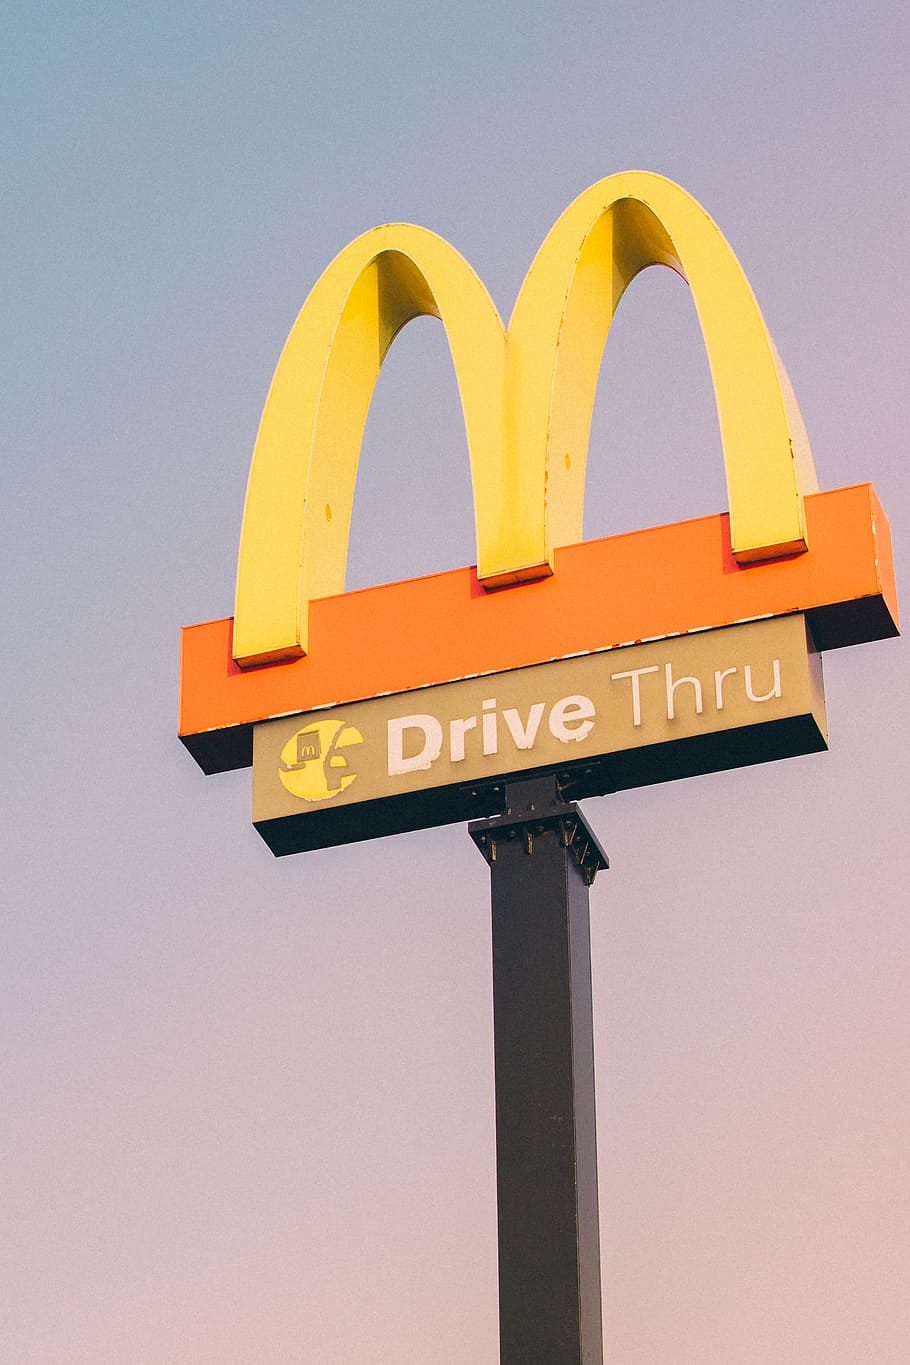 McDonald Drive Thru logo street signage, mcdonald', drive through